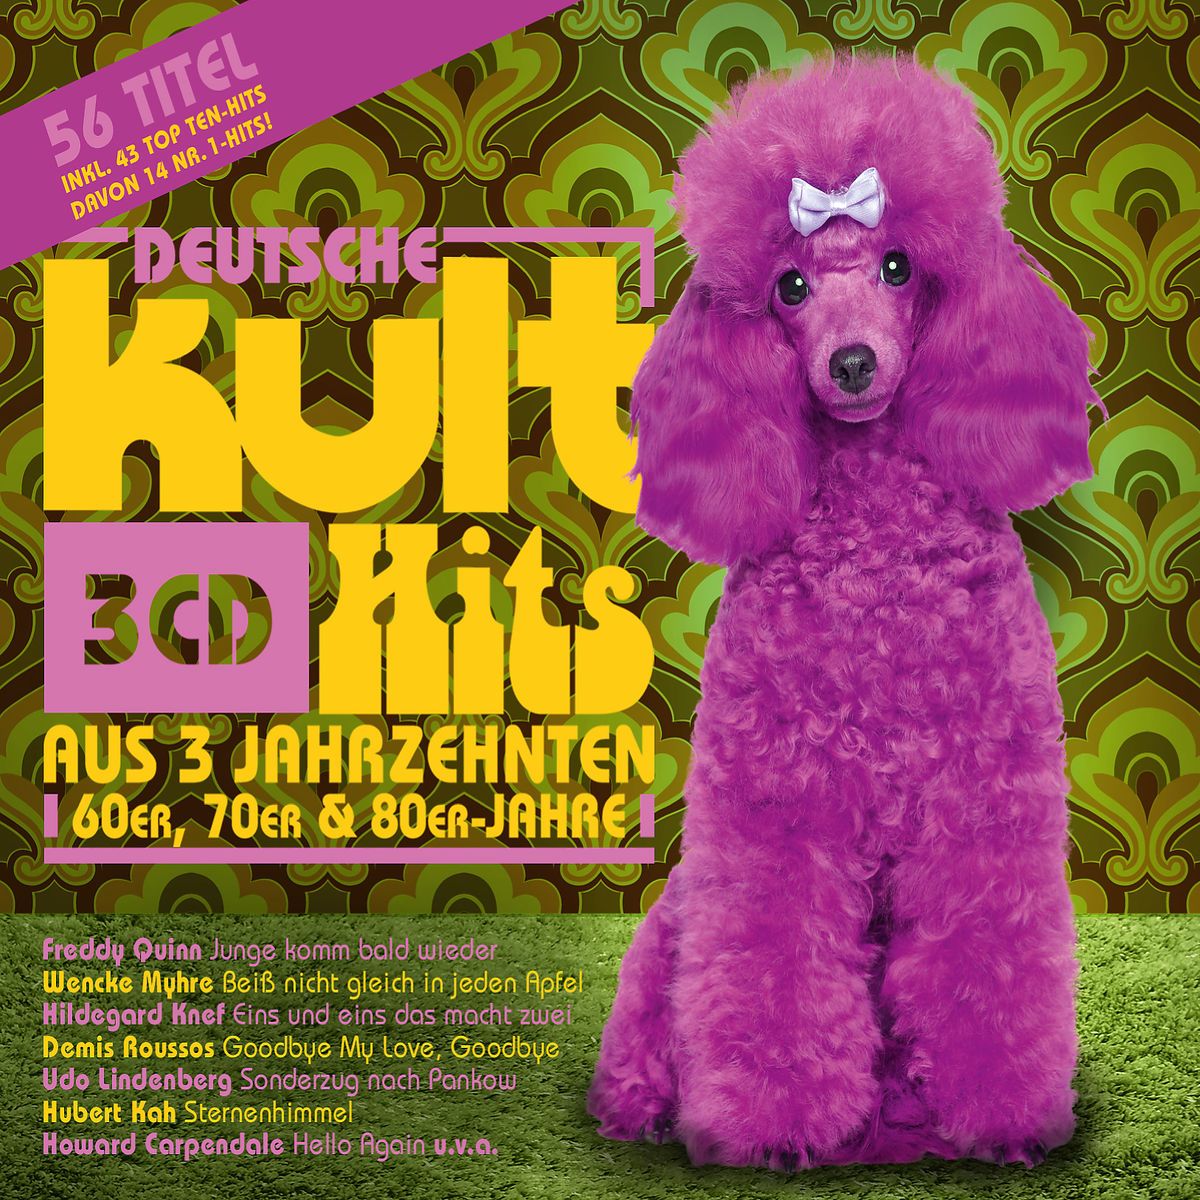 Deutsche Kult Hits Aus 3 Jahrzehnten Dutchcharts Nl